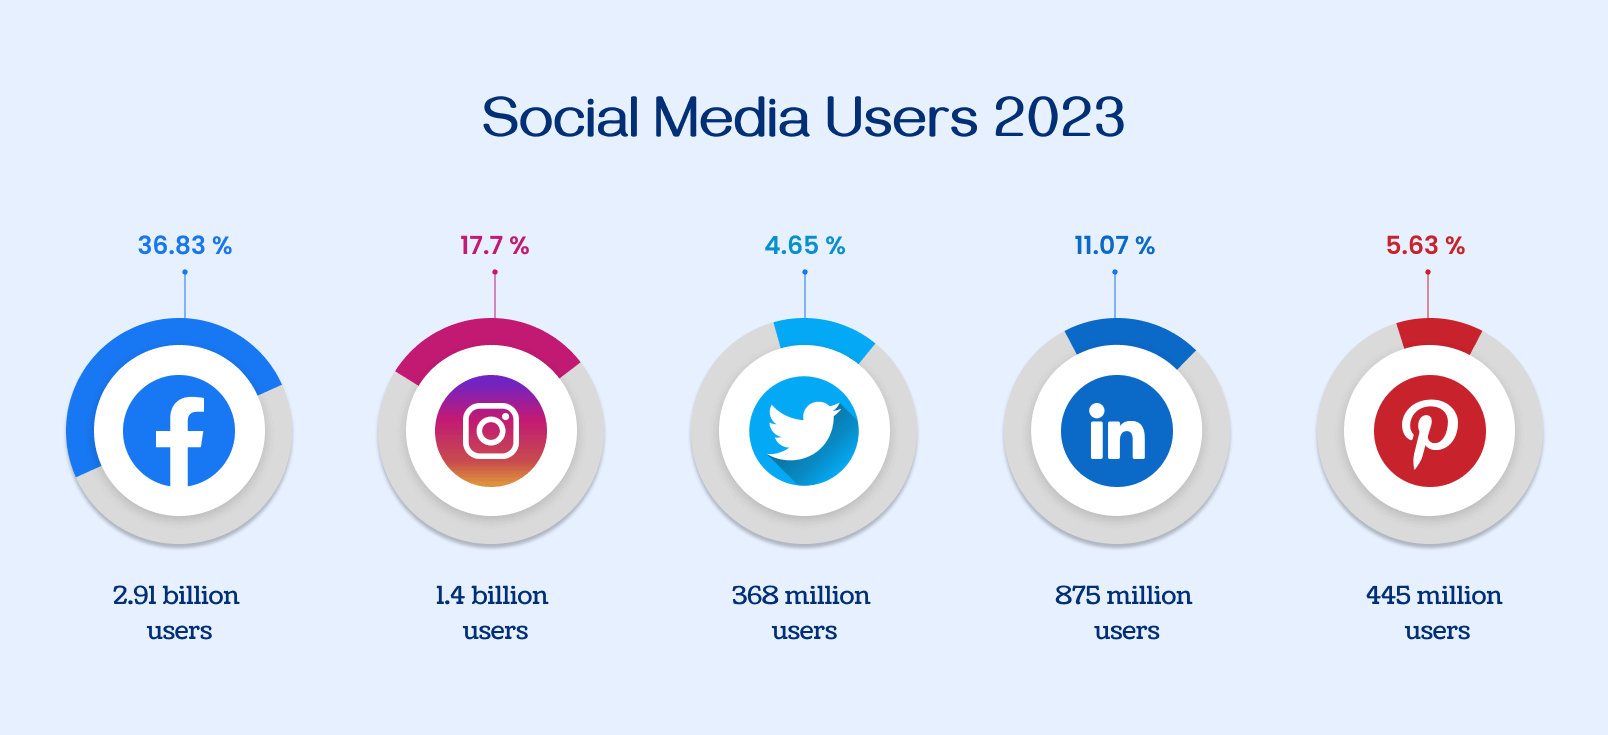 Social media user statistics